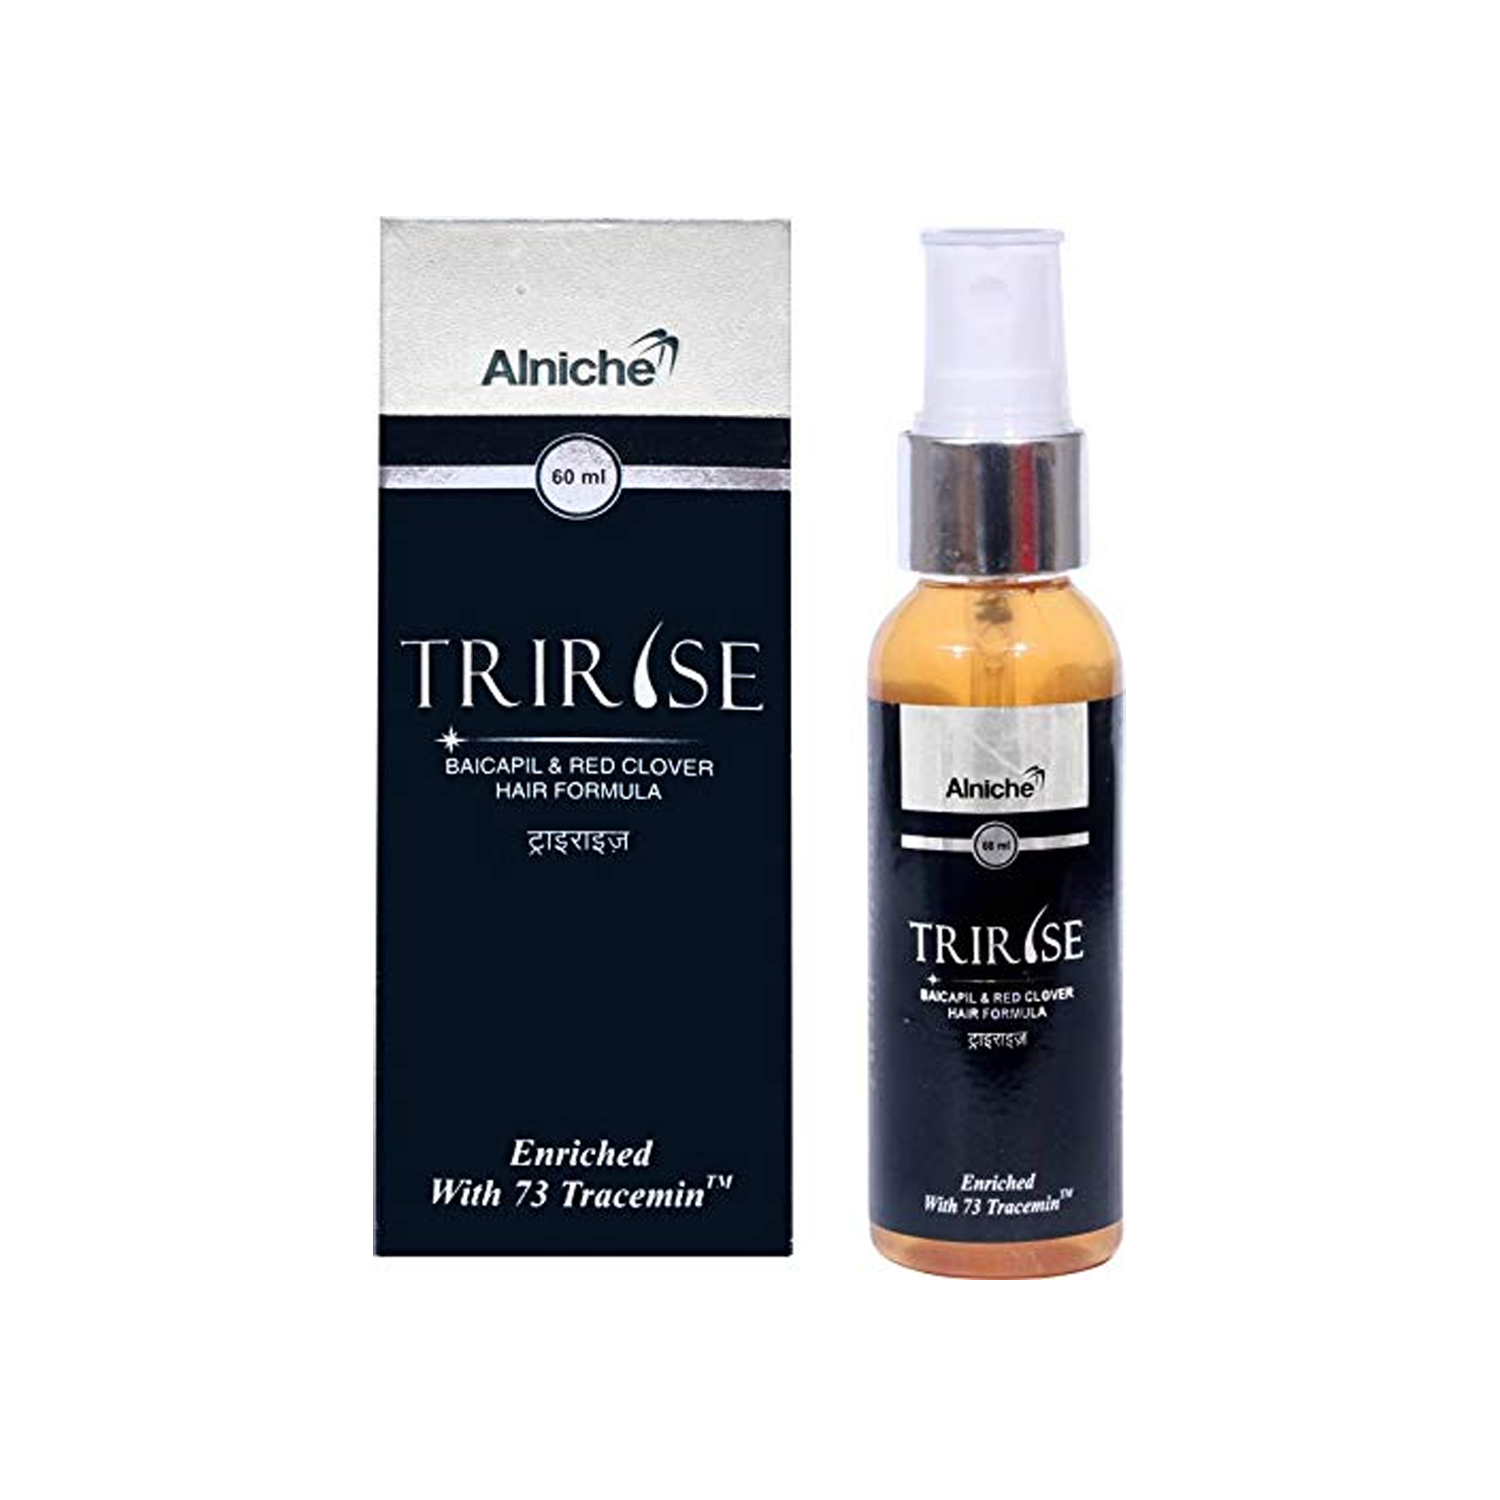 Tririse Hair Serum 60ml